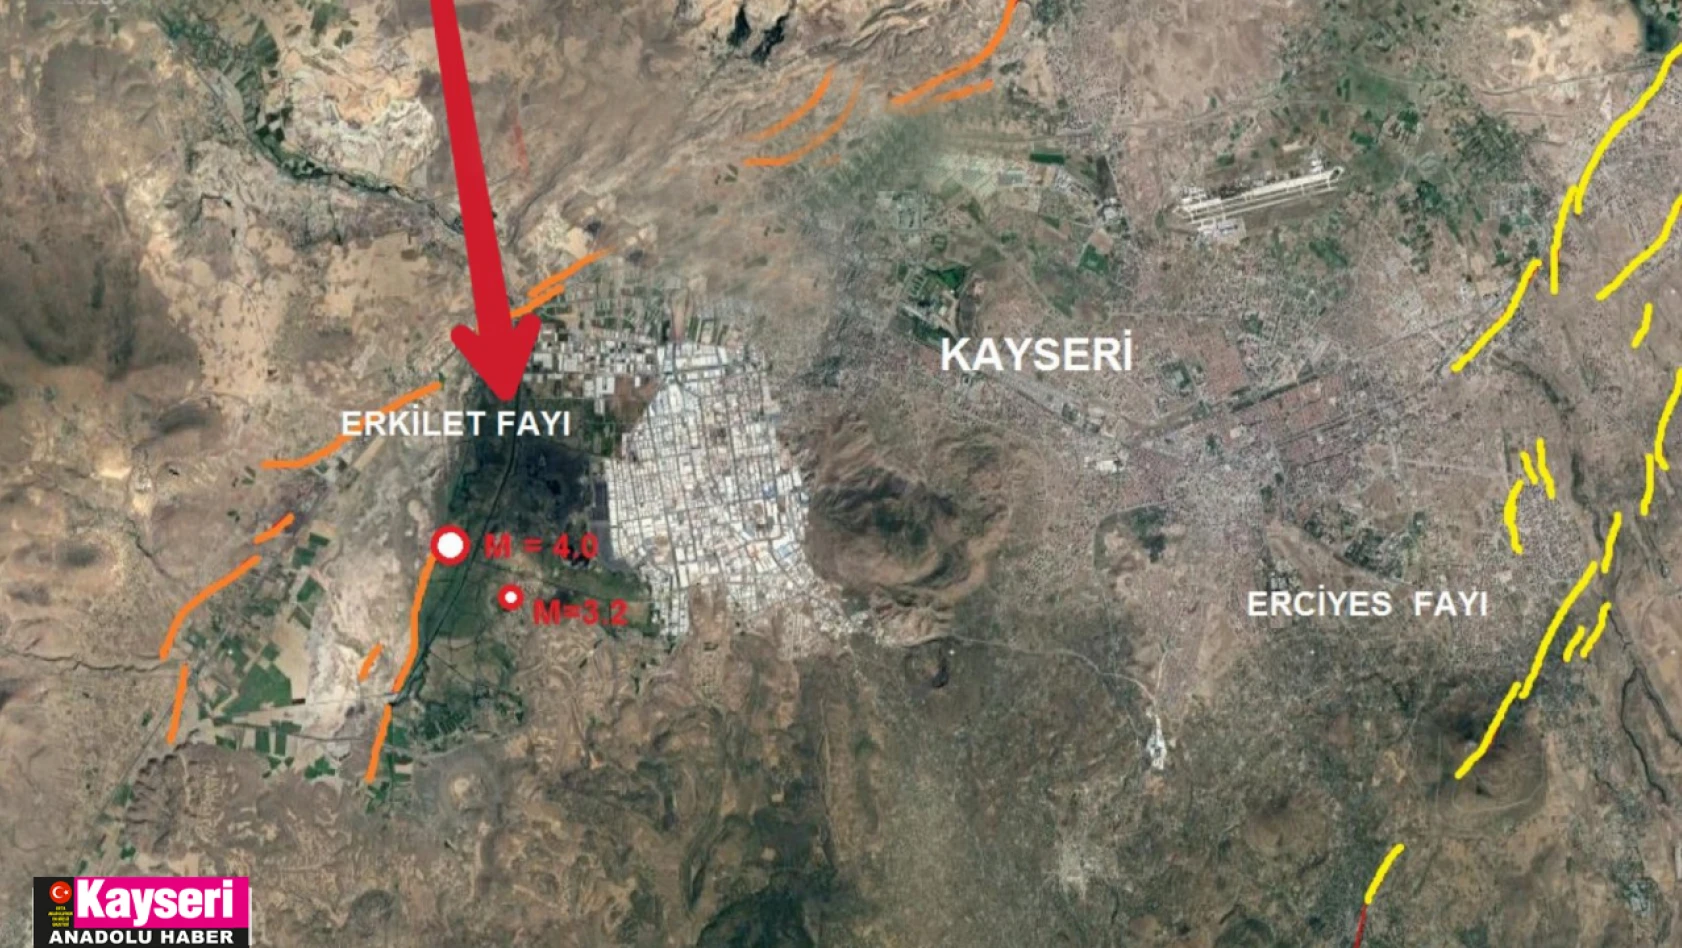 Kayseri'de çok büyük depremler meydana gelir mi? İçelli'den Kayseri açıklaması...